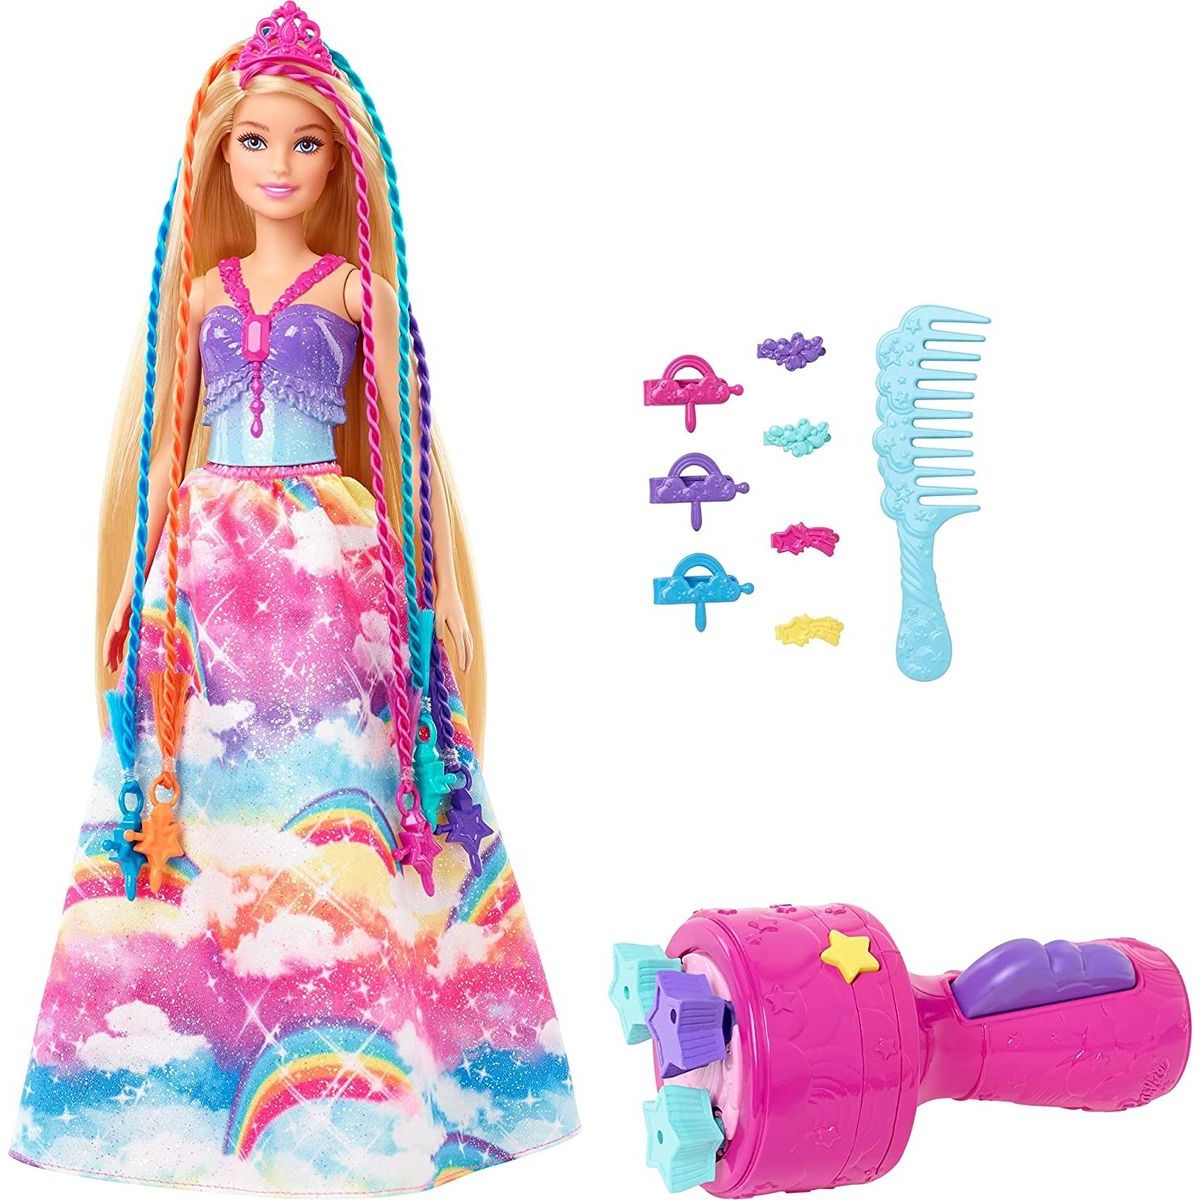 Mattel Barbie Princezna s barevnými vlasy herní set